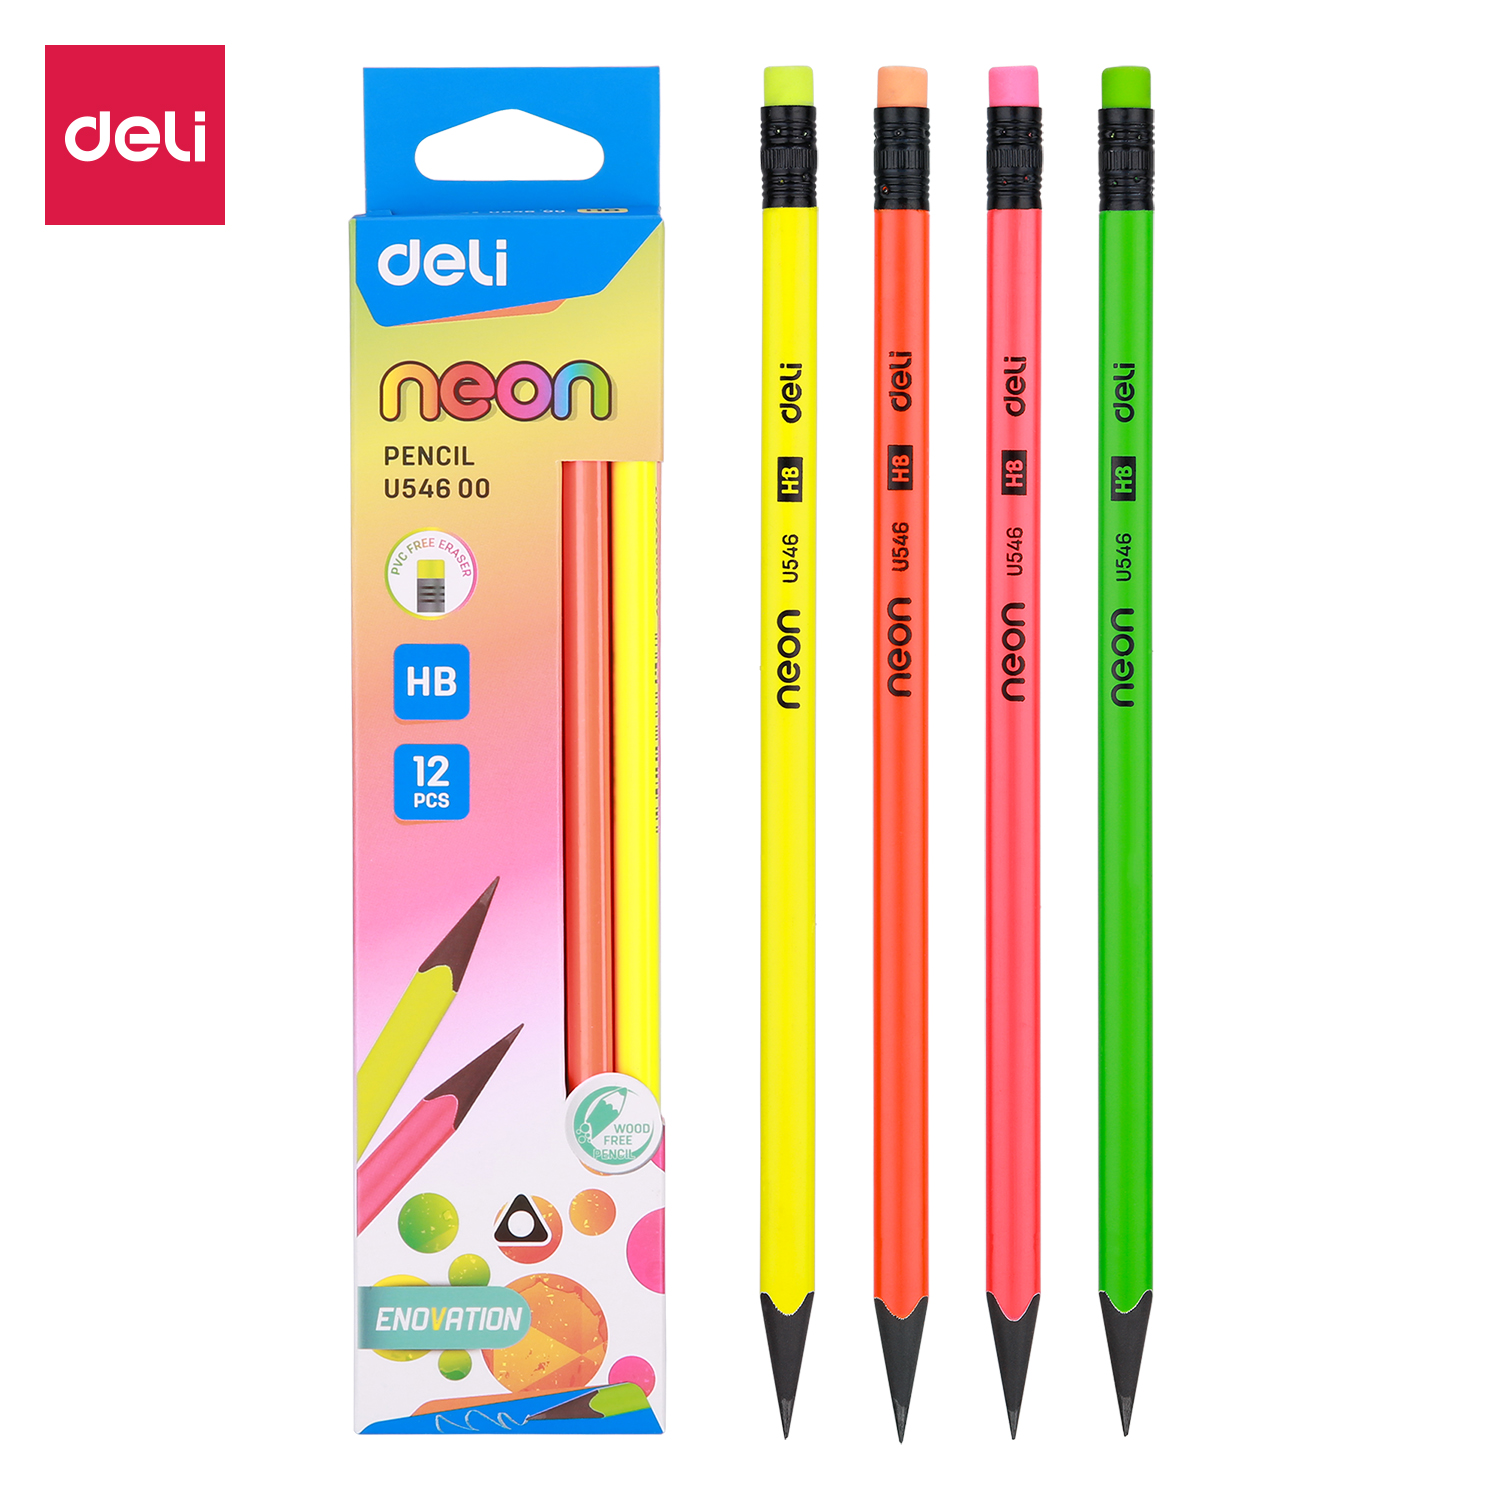 Deli-EU54600 Pencil